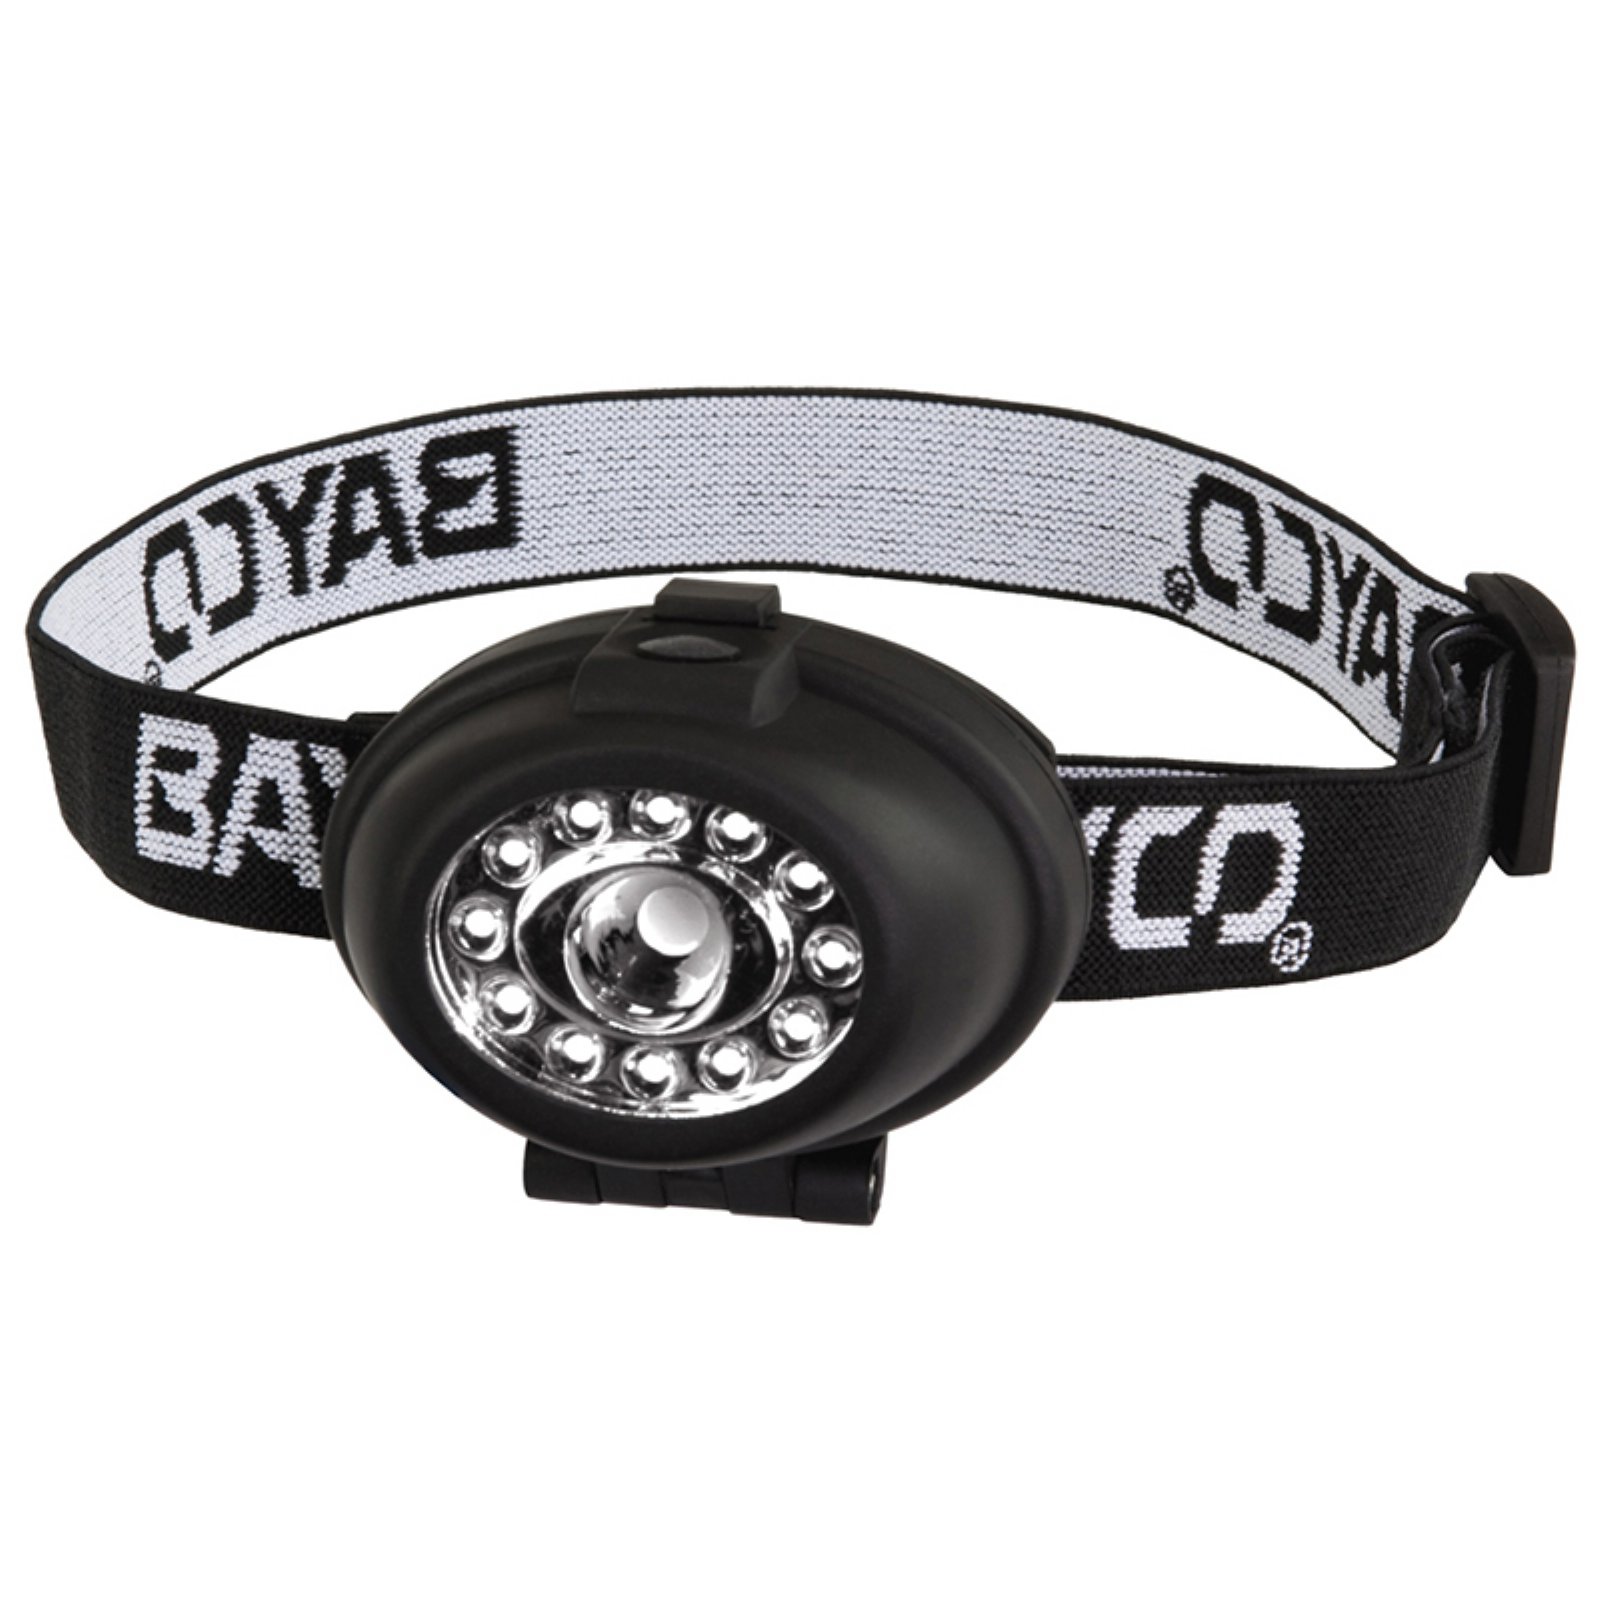 Bayco NSP-2212 Night Stick 13 LED Headlamp, Black - image 1 of 2